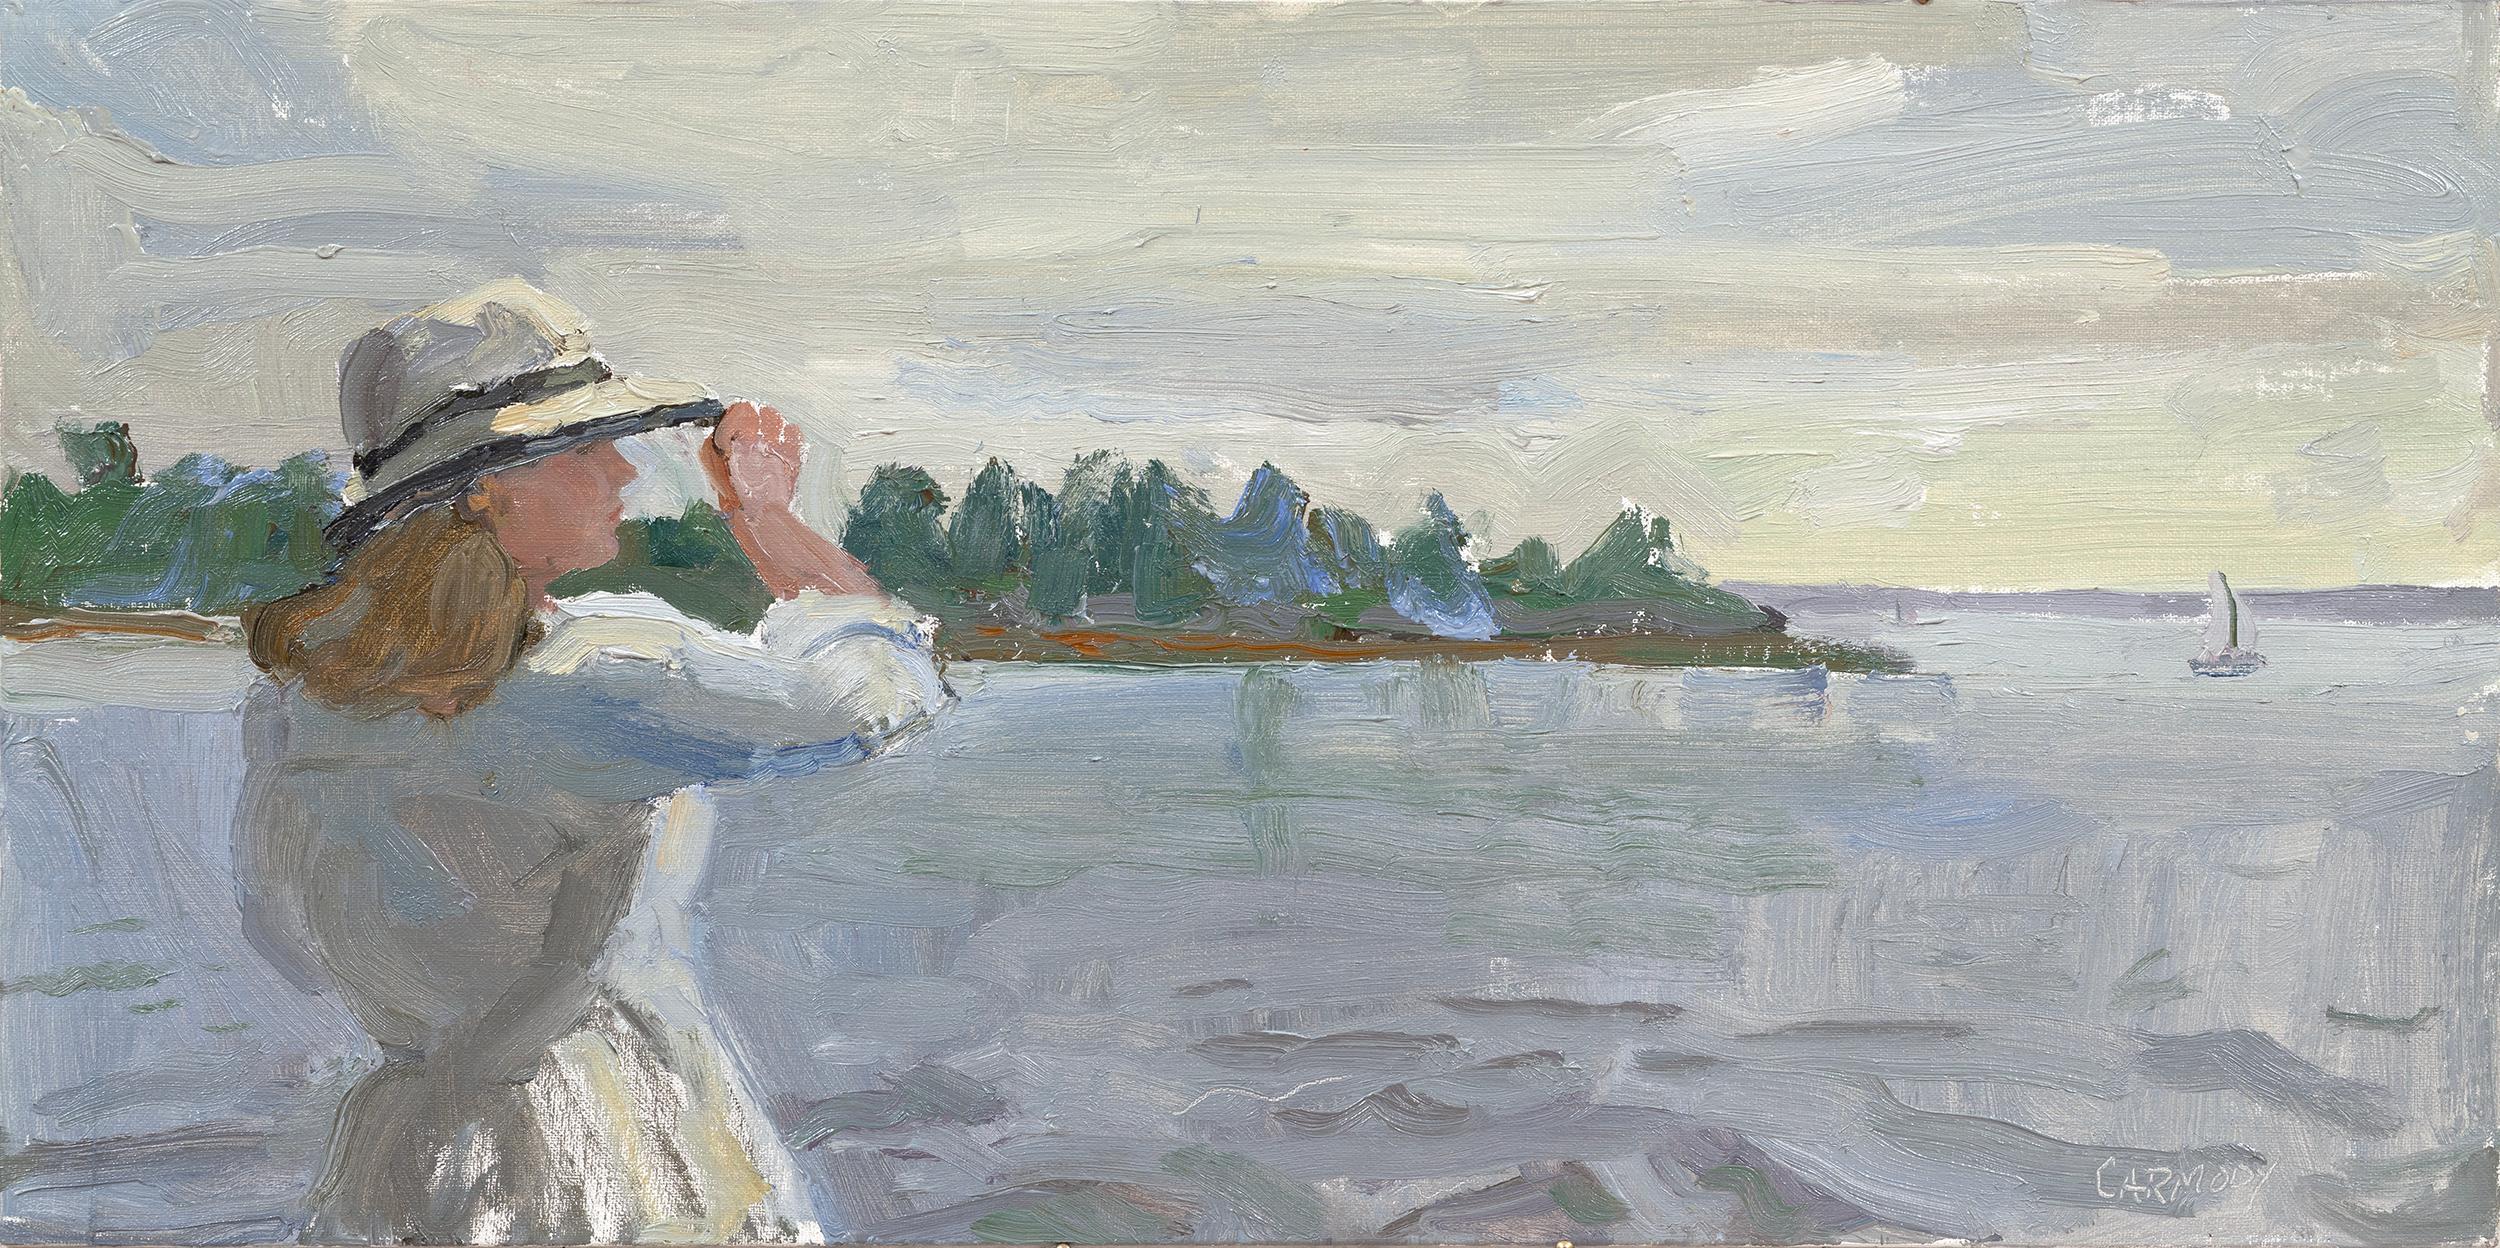 Kelly Carmody Landscape Painting – "Looking Out" - Zeitgenössische Seelandschaft mit junger Frau in Weiß